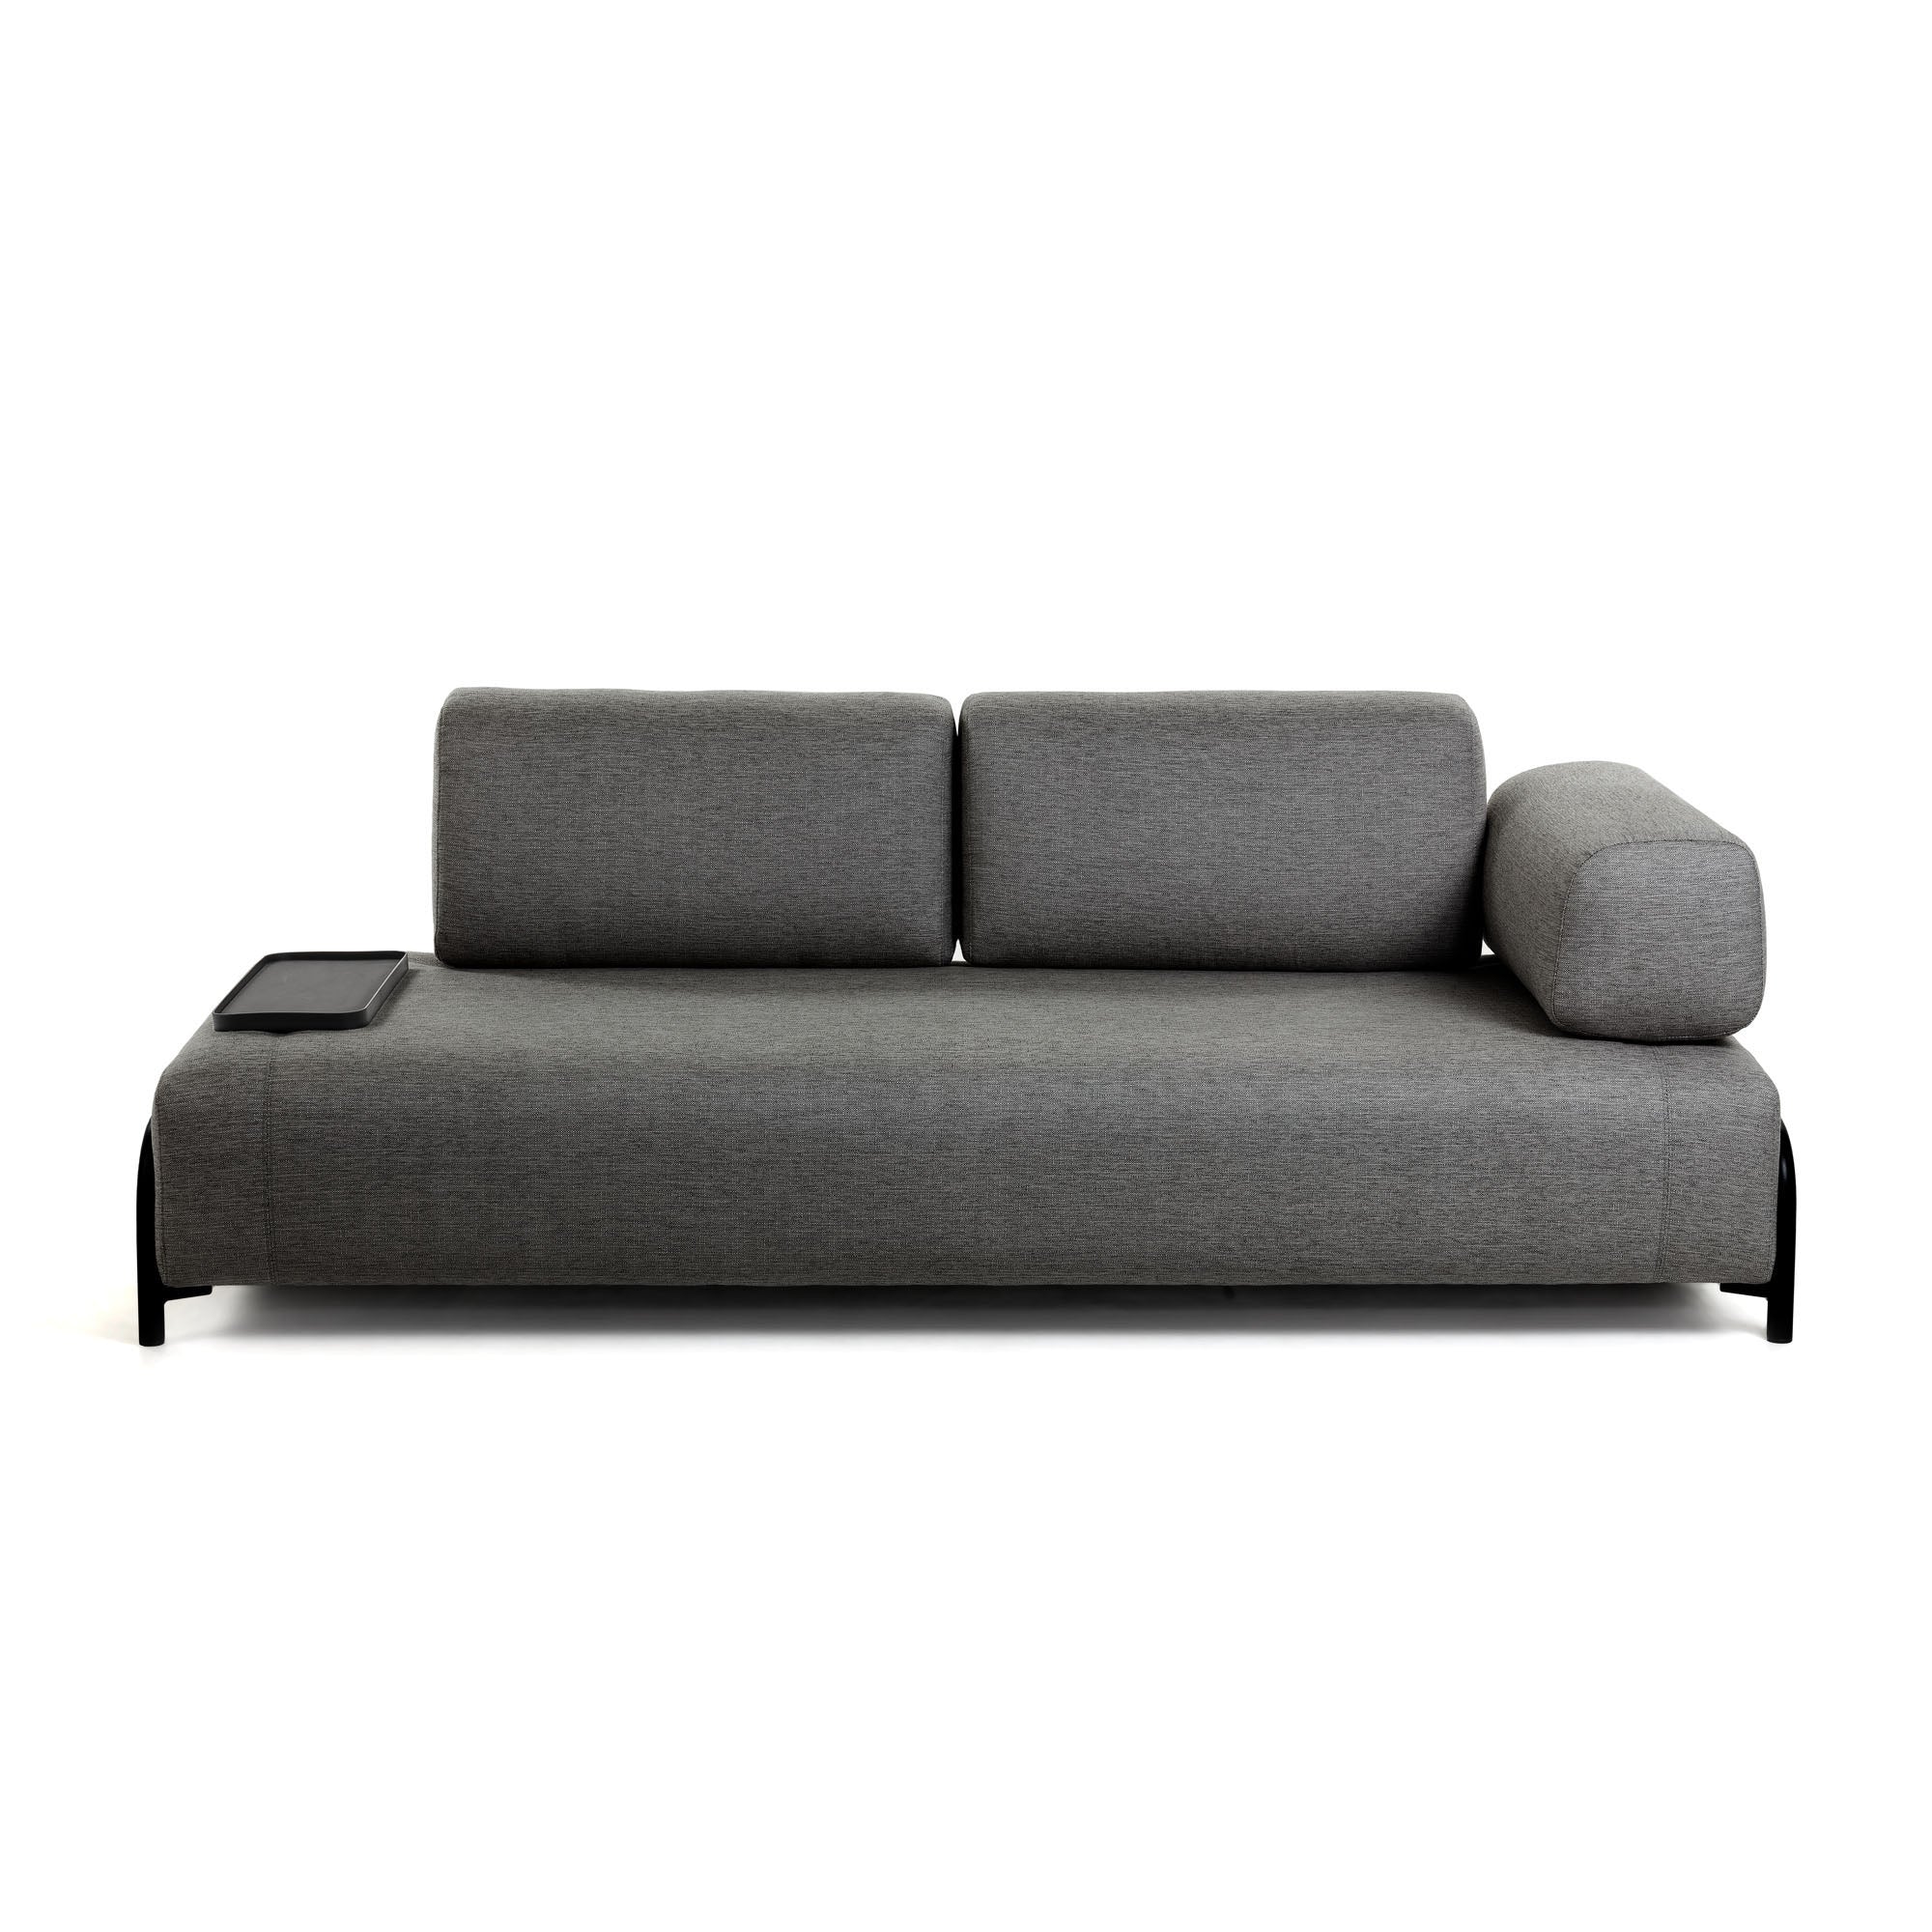 Compo 3 személyes kanapé kis tálcával, sötétszürke színben, 232 cm